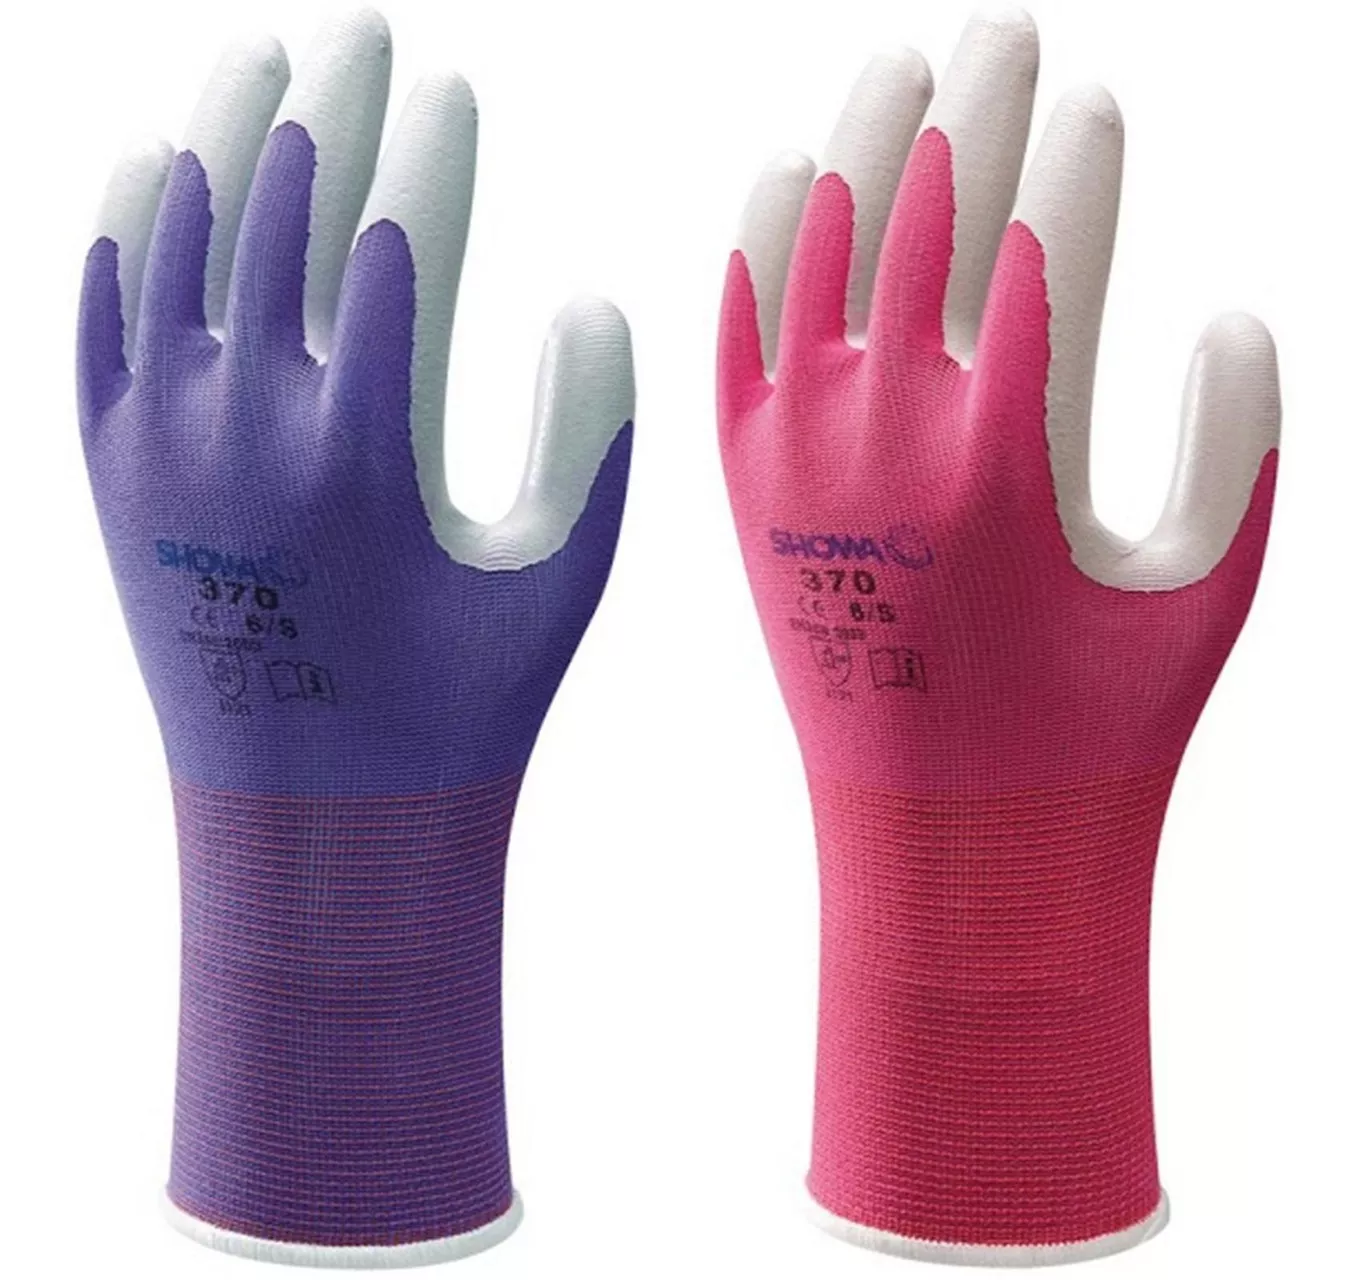 Multi-Purpose Stable Glove